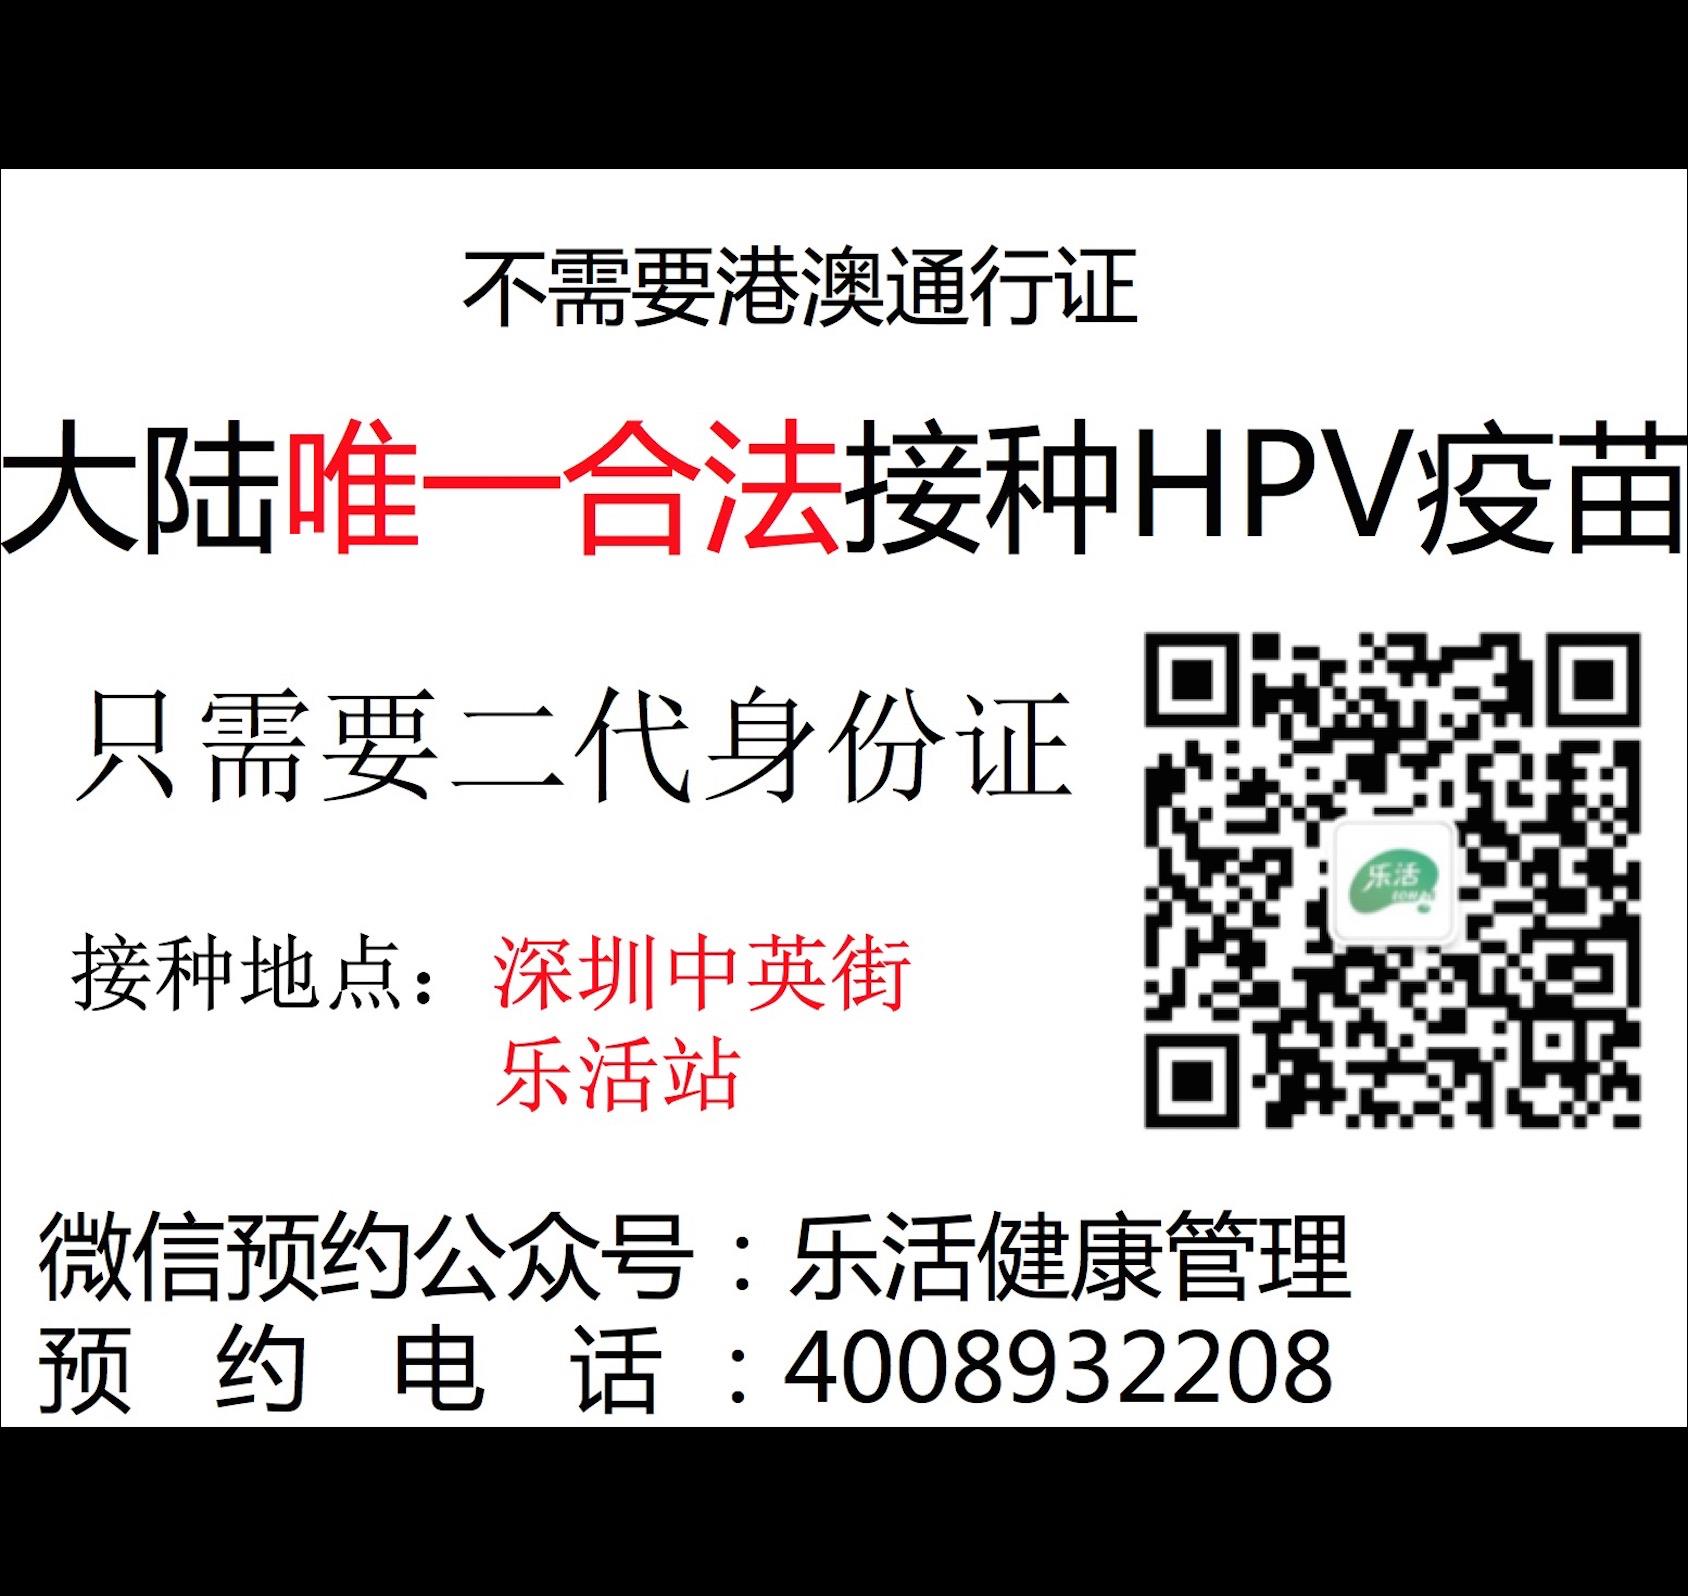 大陆HPV合作 大陆HPV代理加盟 正规HPV平台